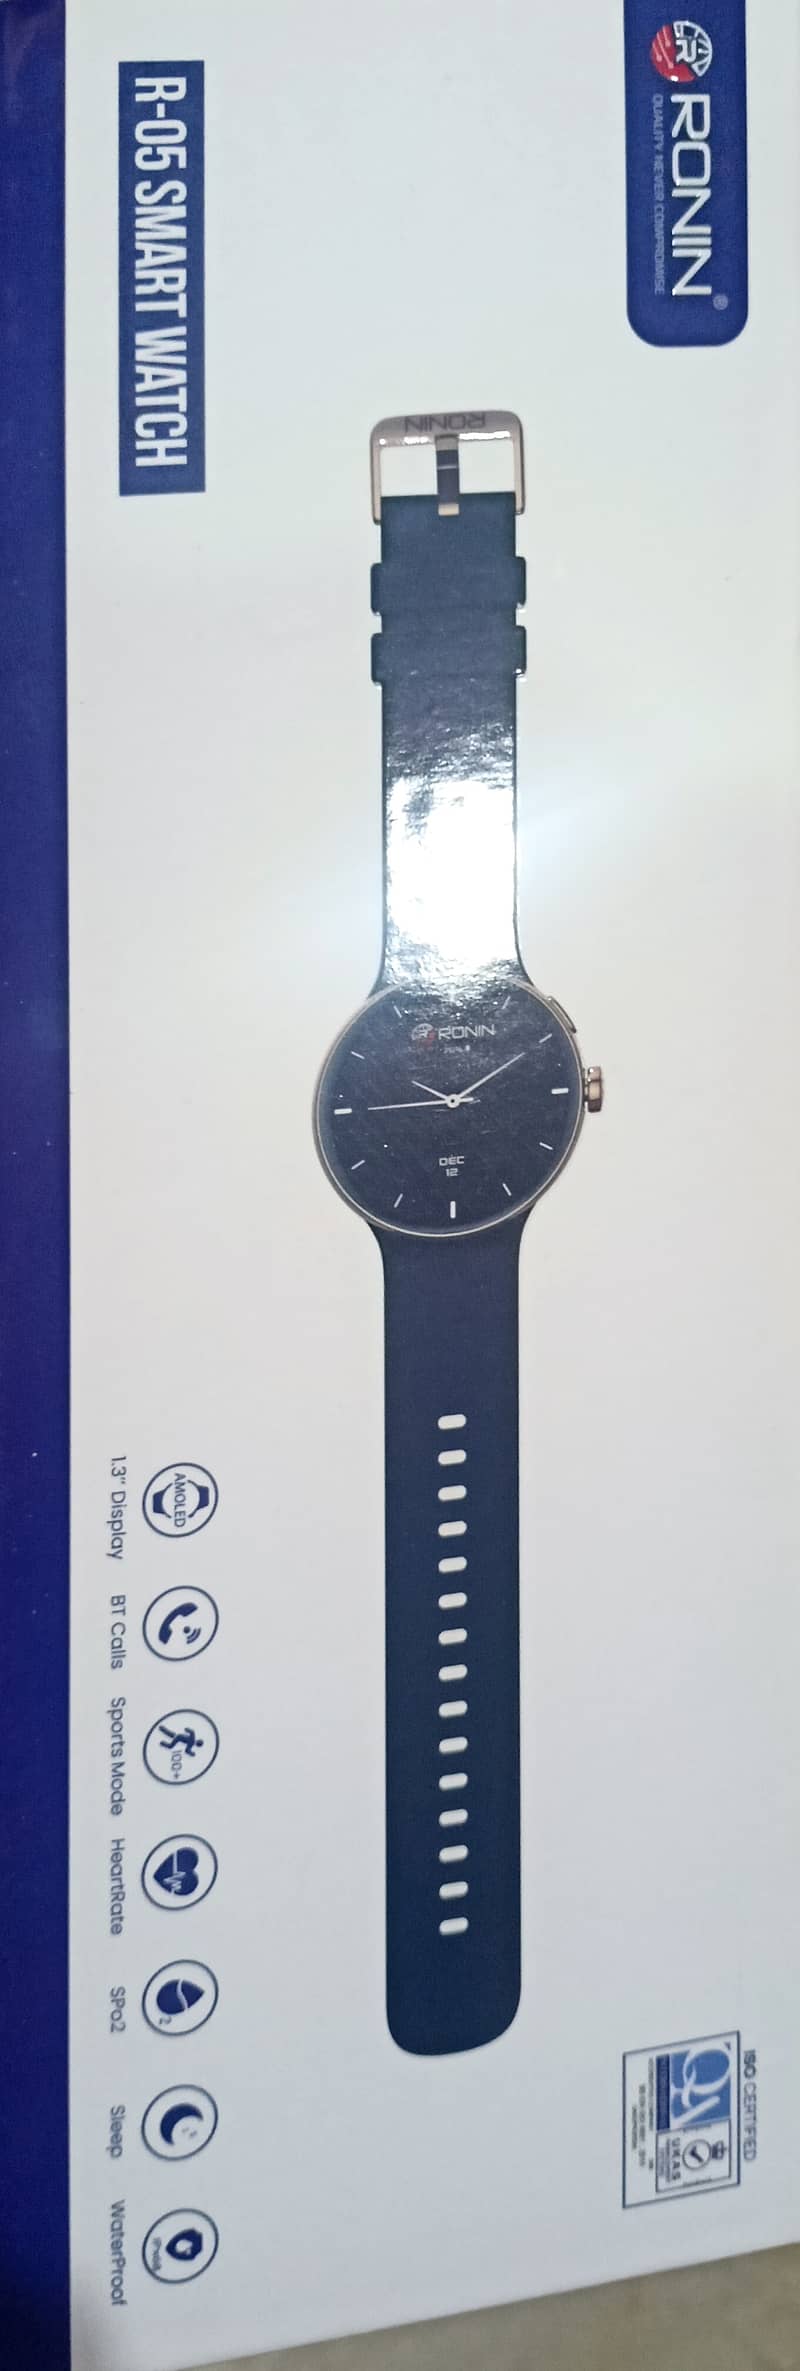 Smart Watch Ronin R 05 6